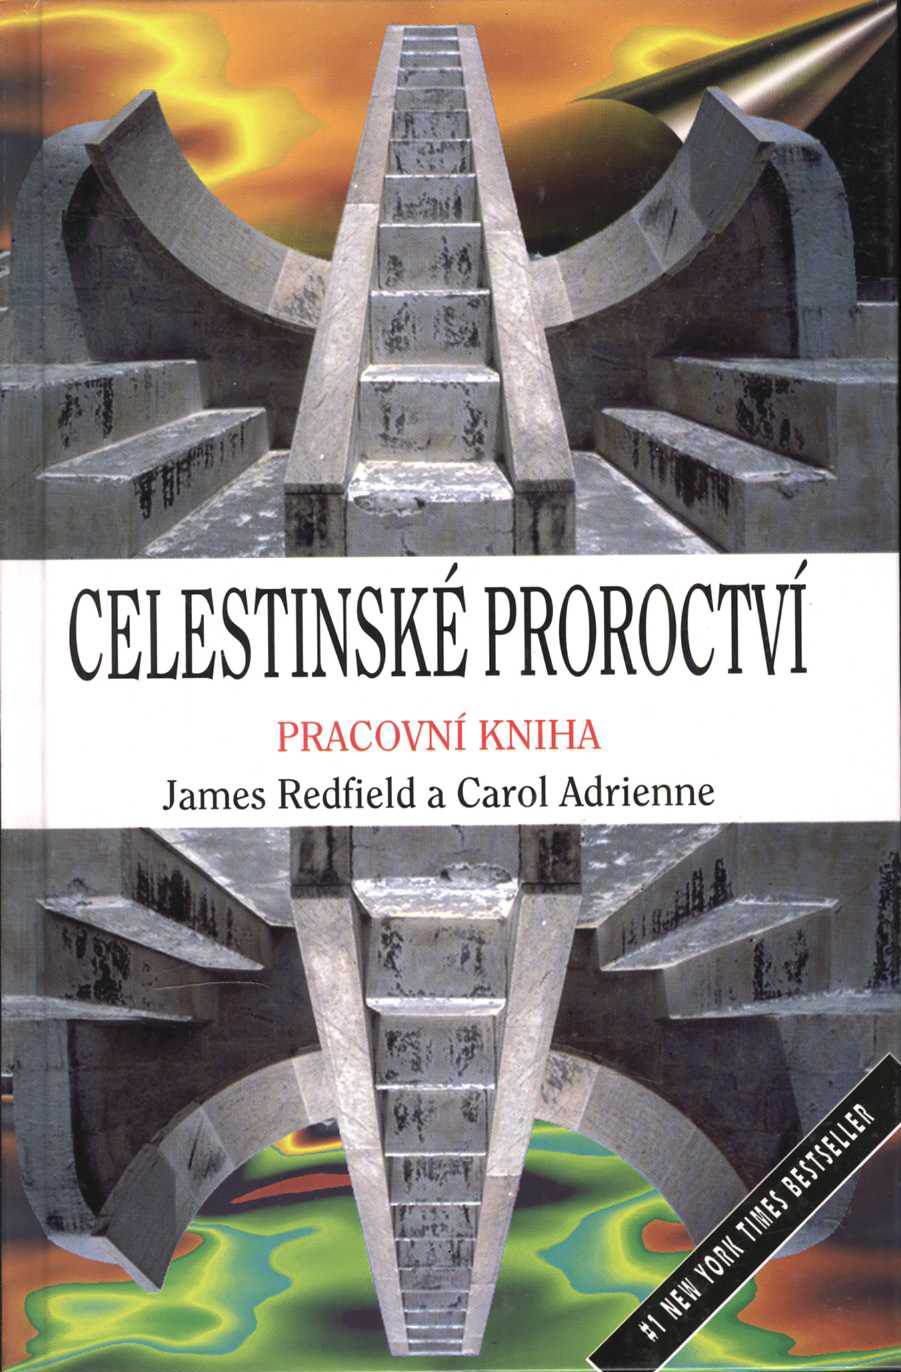 Celestinské proroctví (James Redfield, Carol Adrienne)